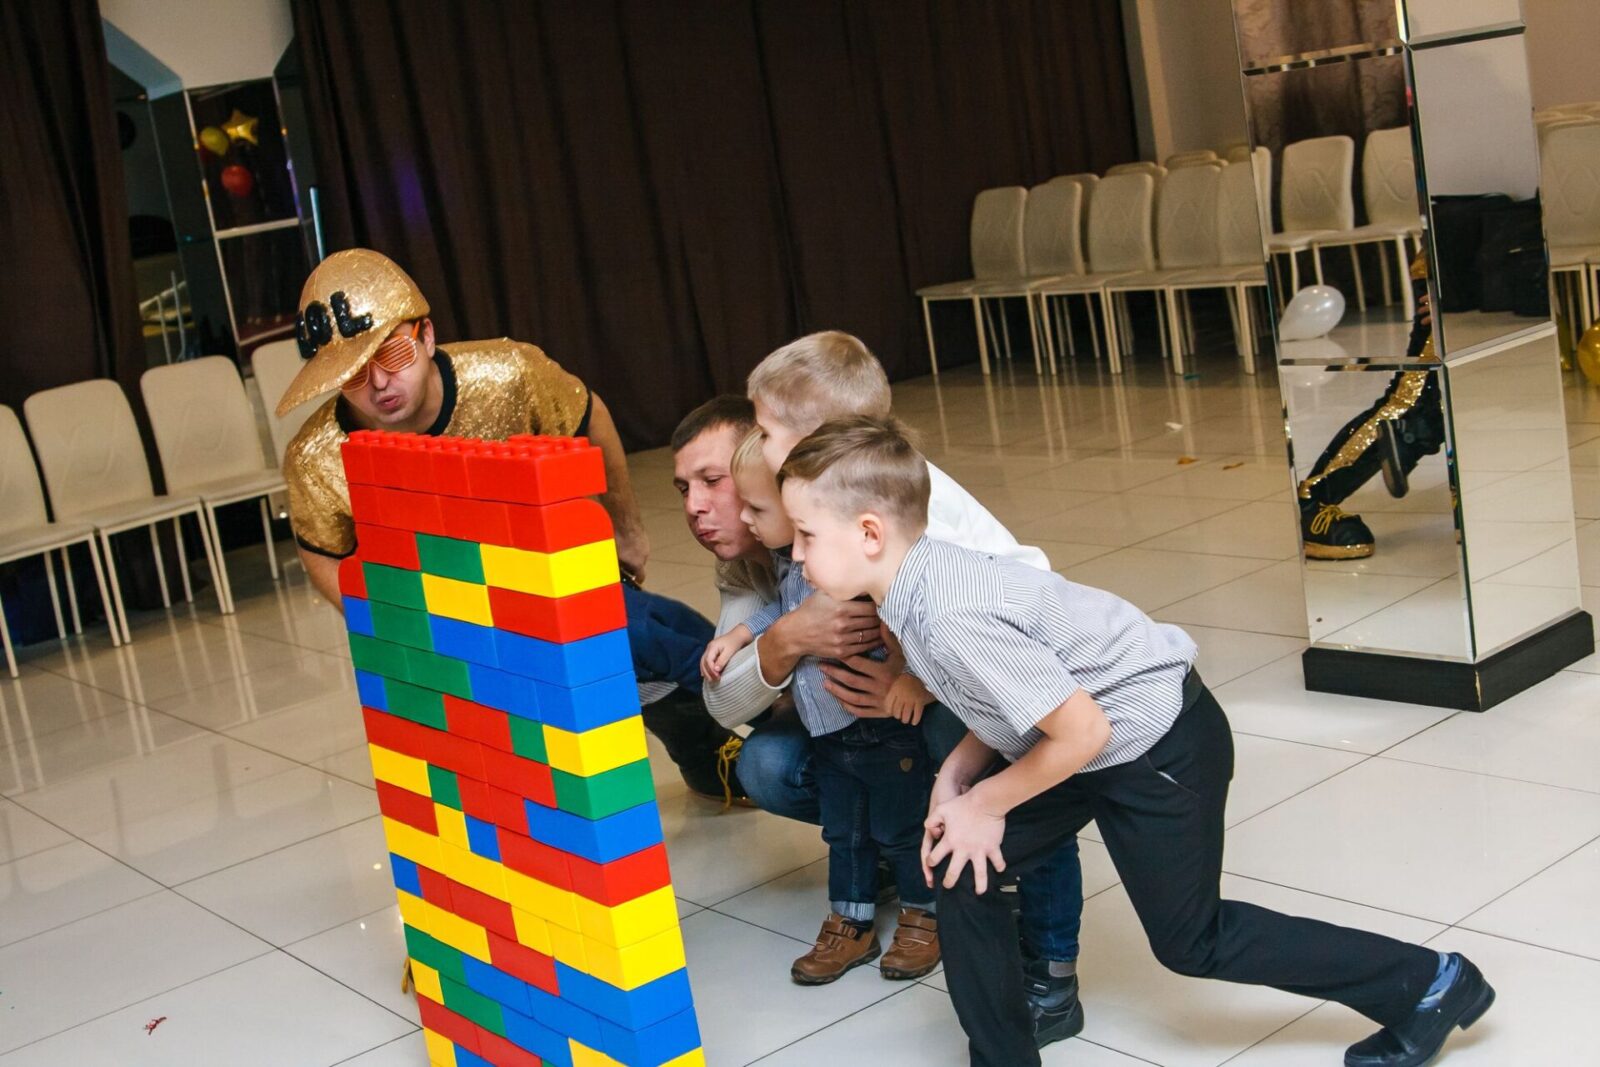 Самое увлекательное в Лего стройке - крушить то, что было построено!